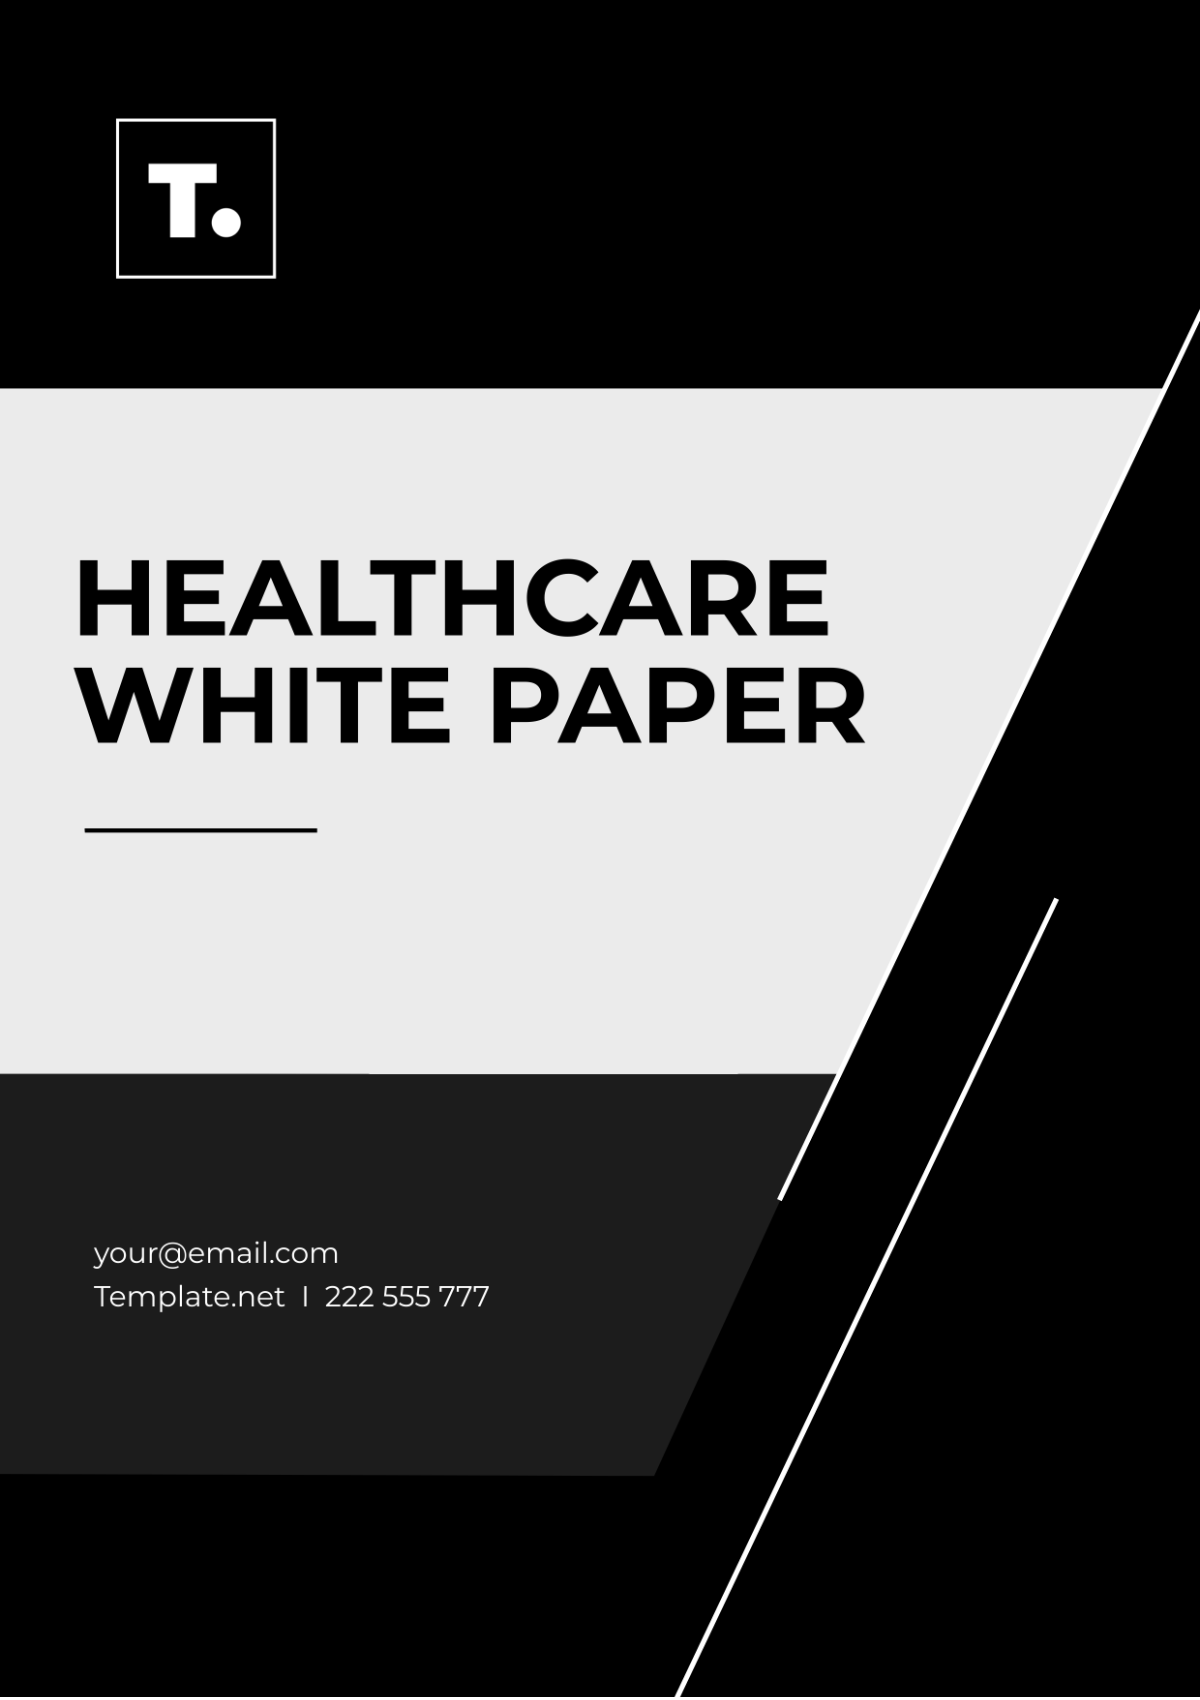 Healthcare White Paper Template